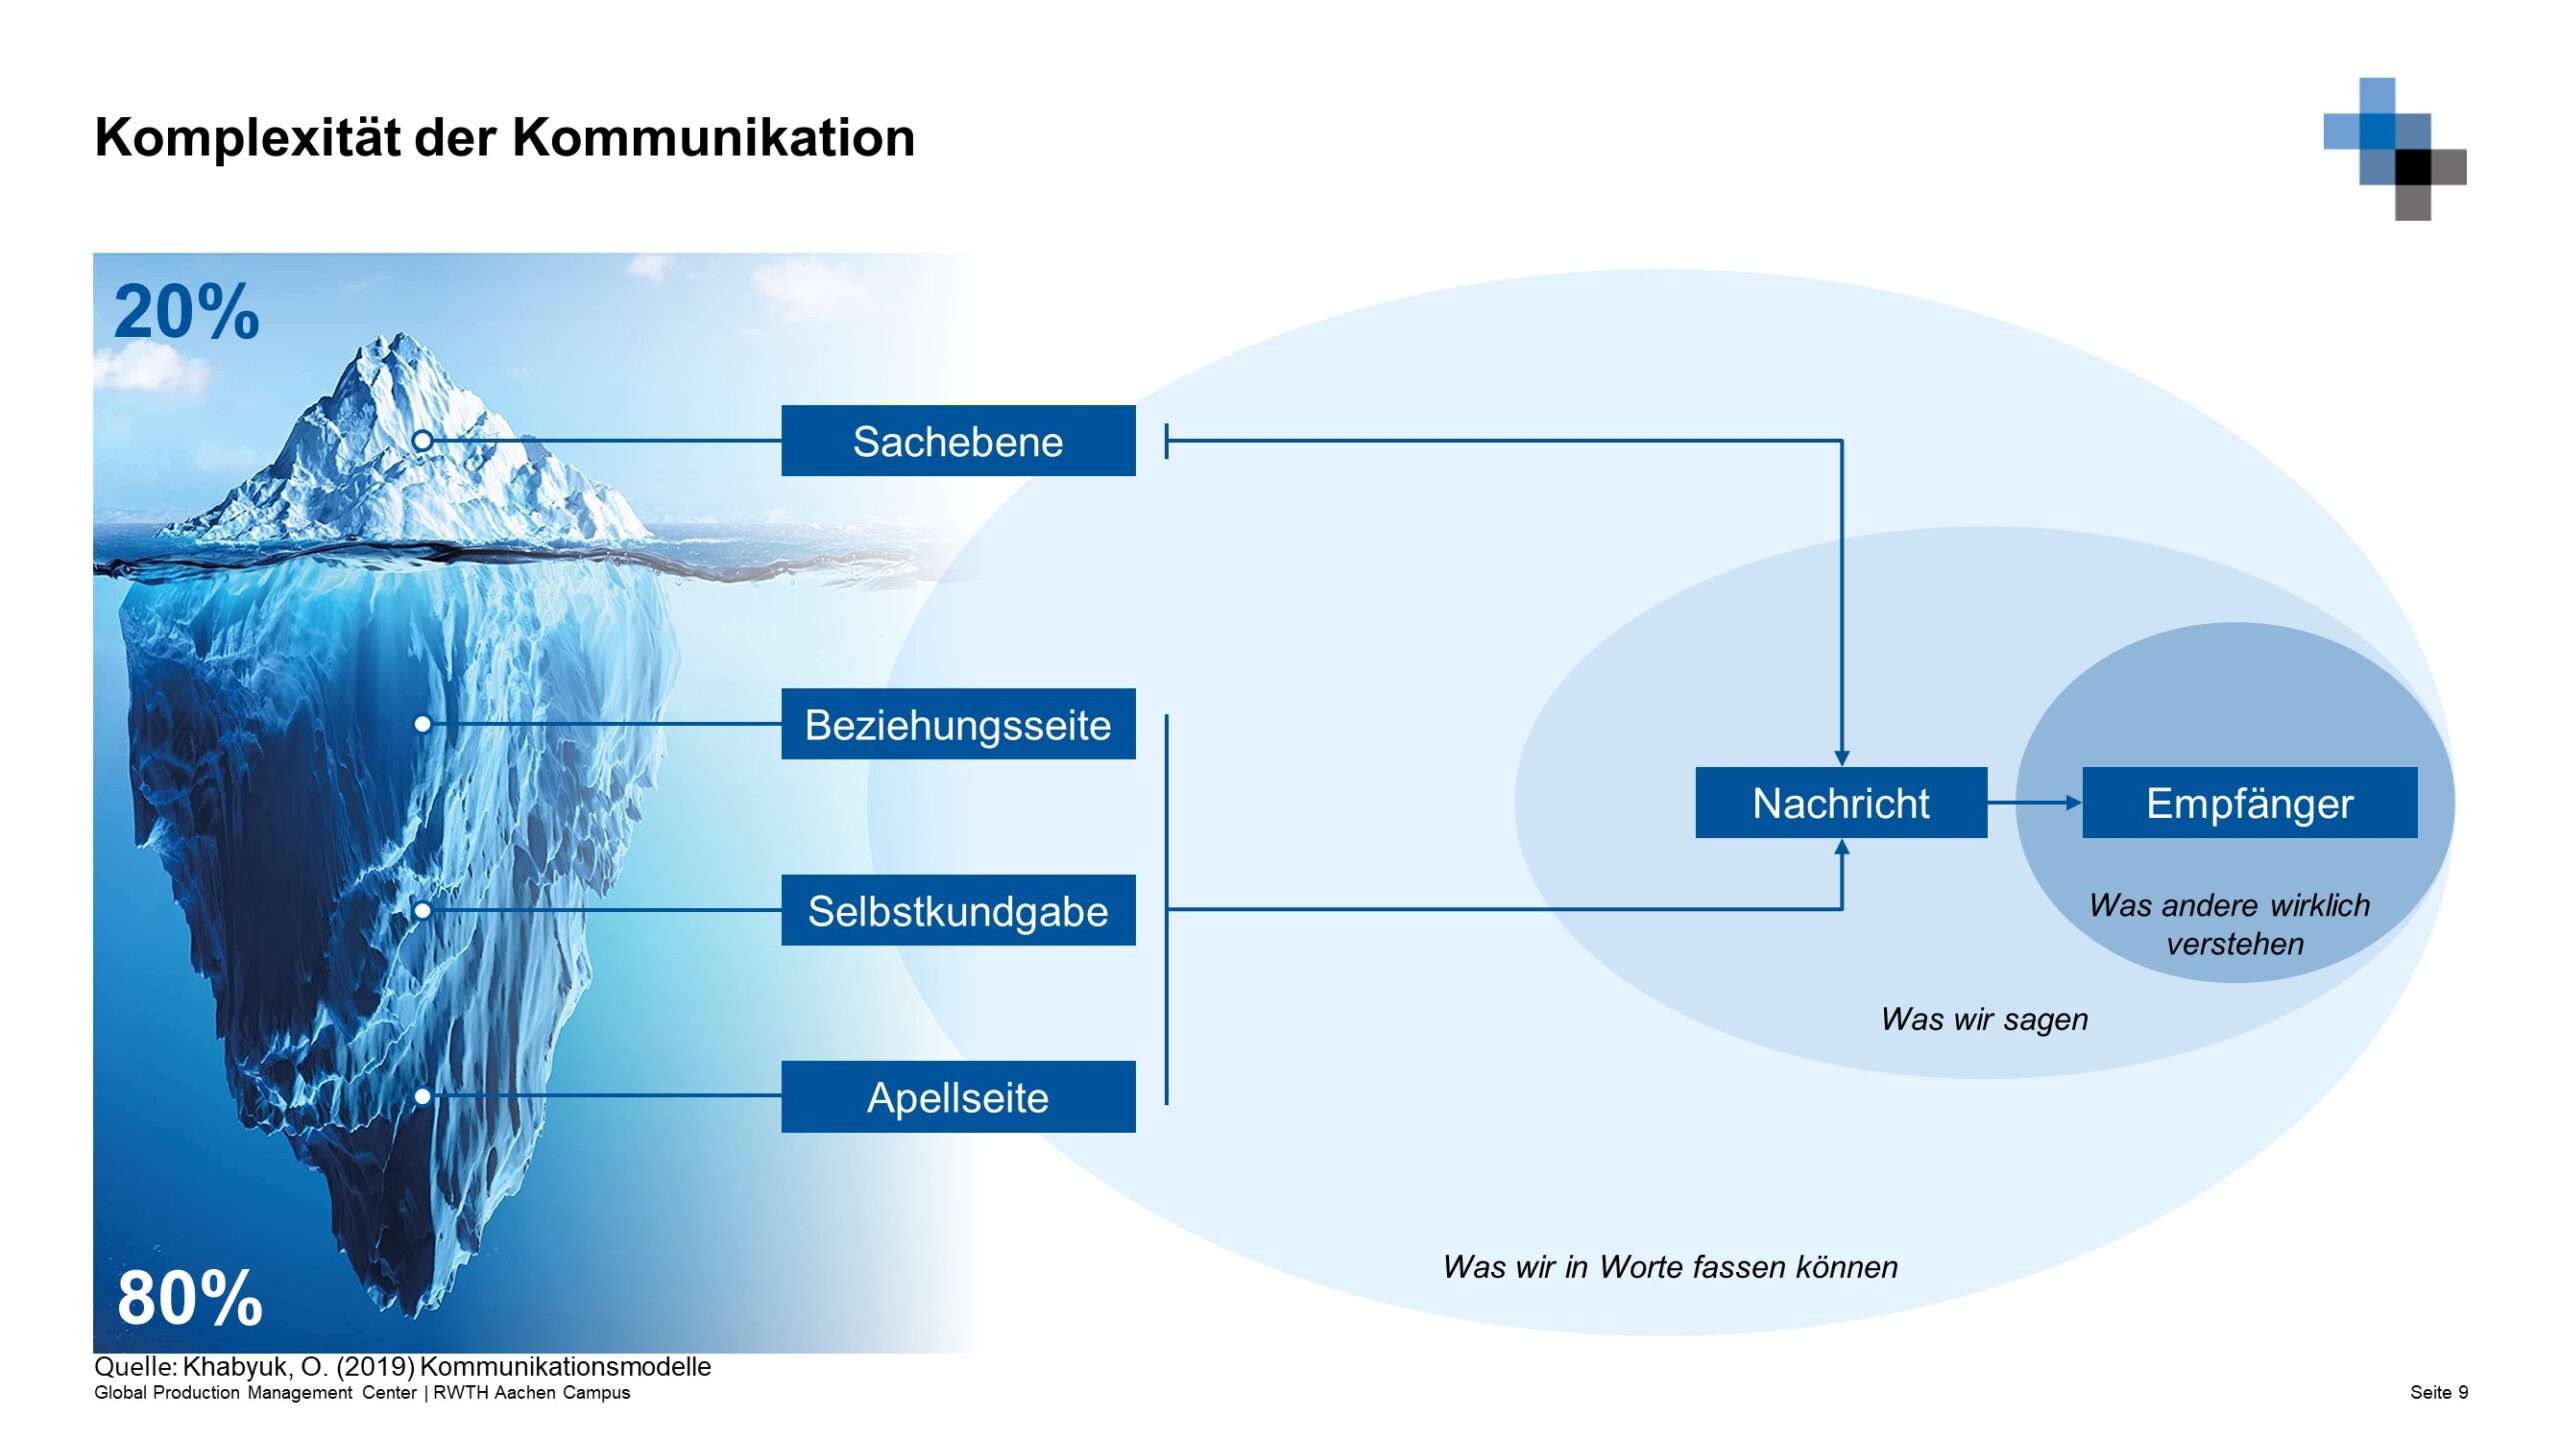 Komplexitaet-der-Kommunikation-scaled 3. Treffen der GPC in 2022  